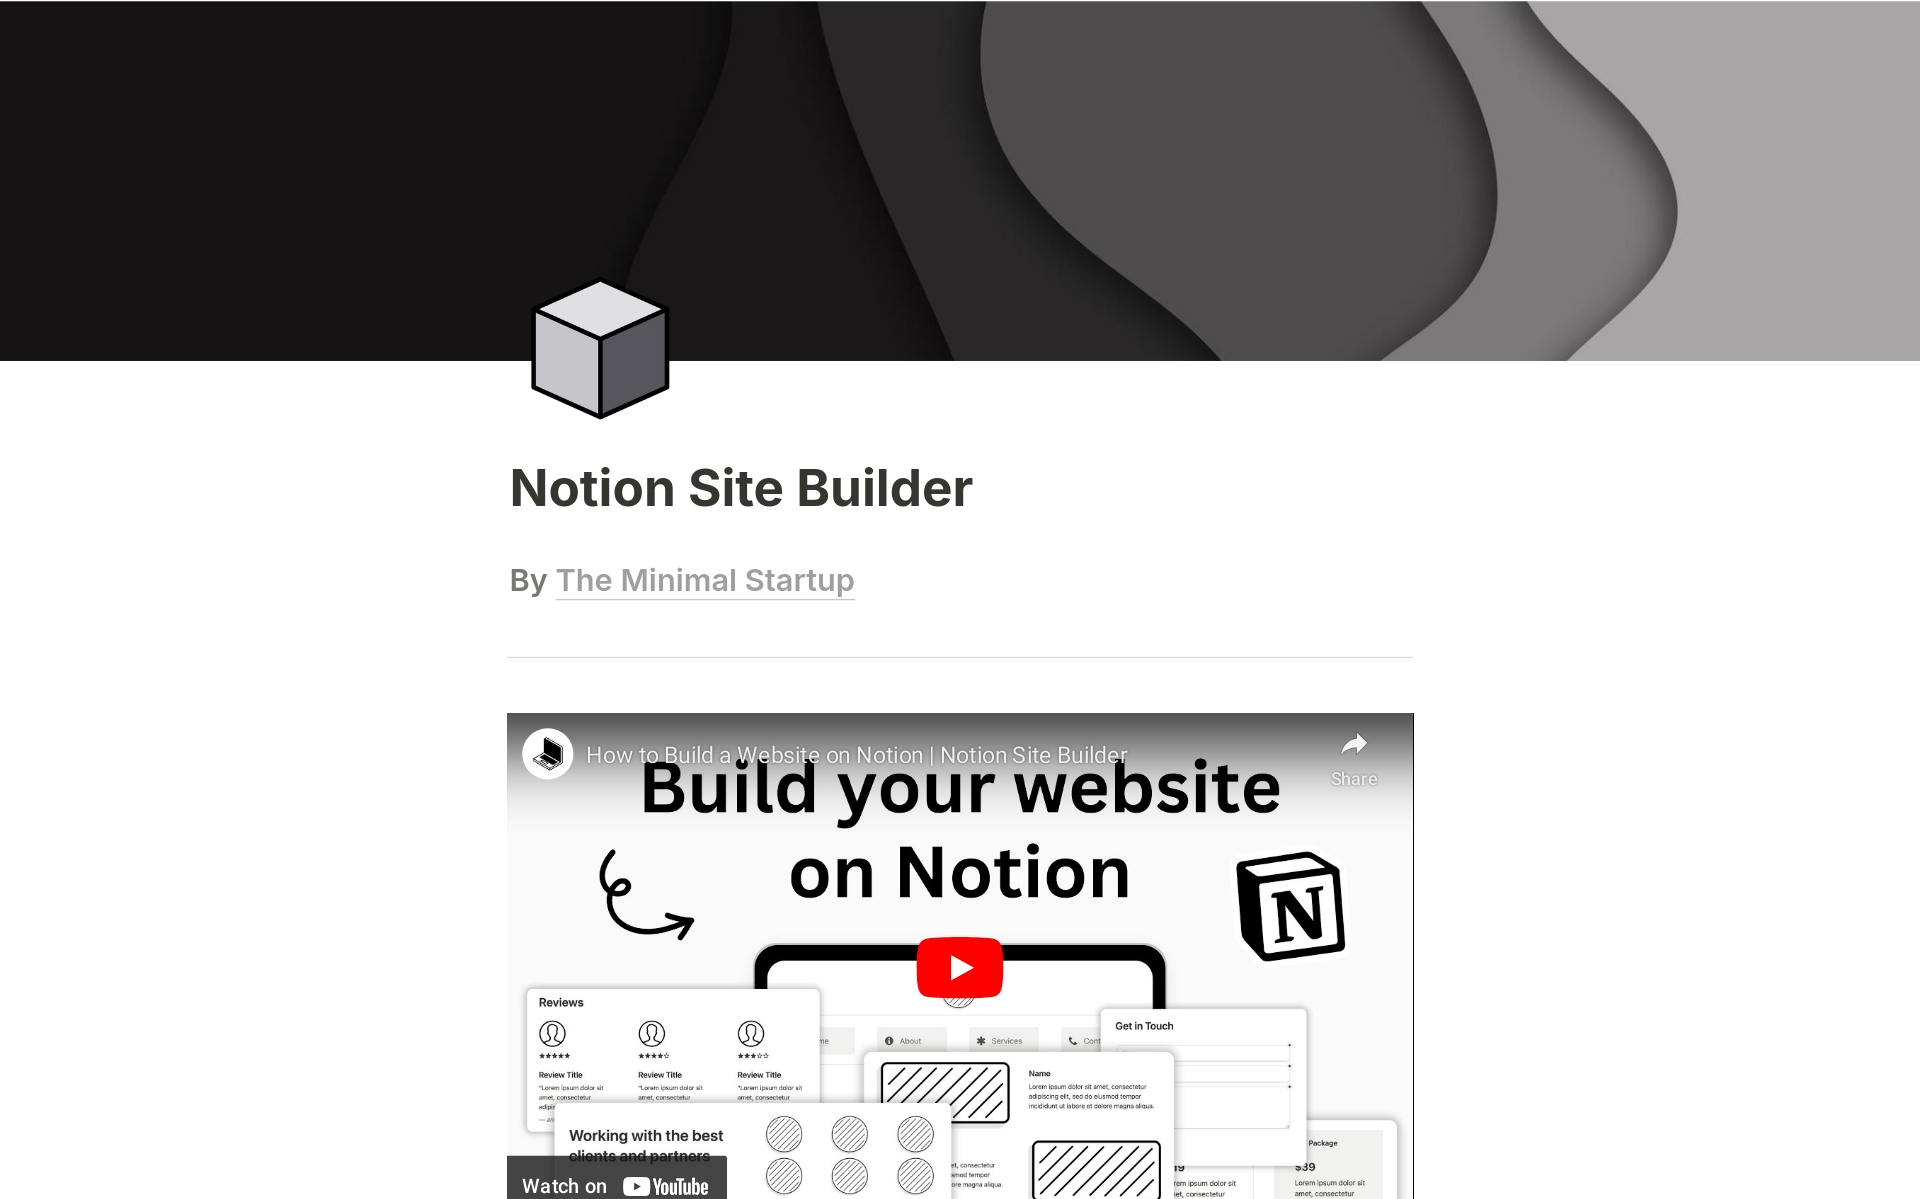 Uma prévia do modelo para Notion Site Builder